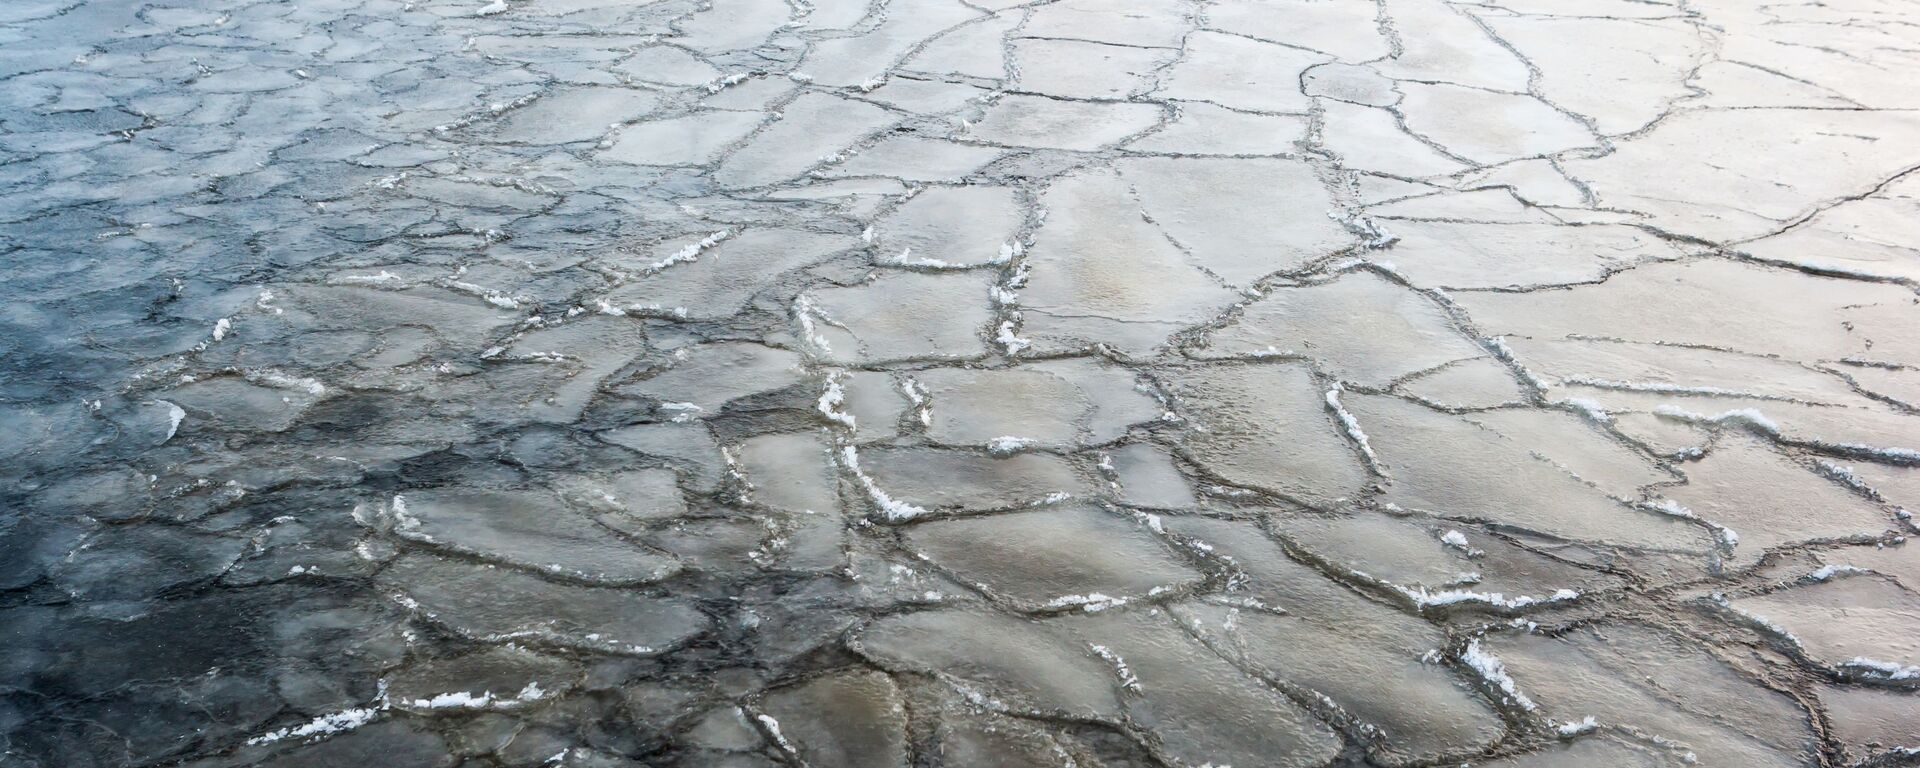 Лед на озере  - Sputnik Беларусь, 1920, 28.12.2020